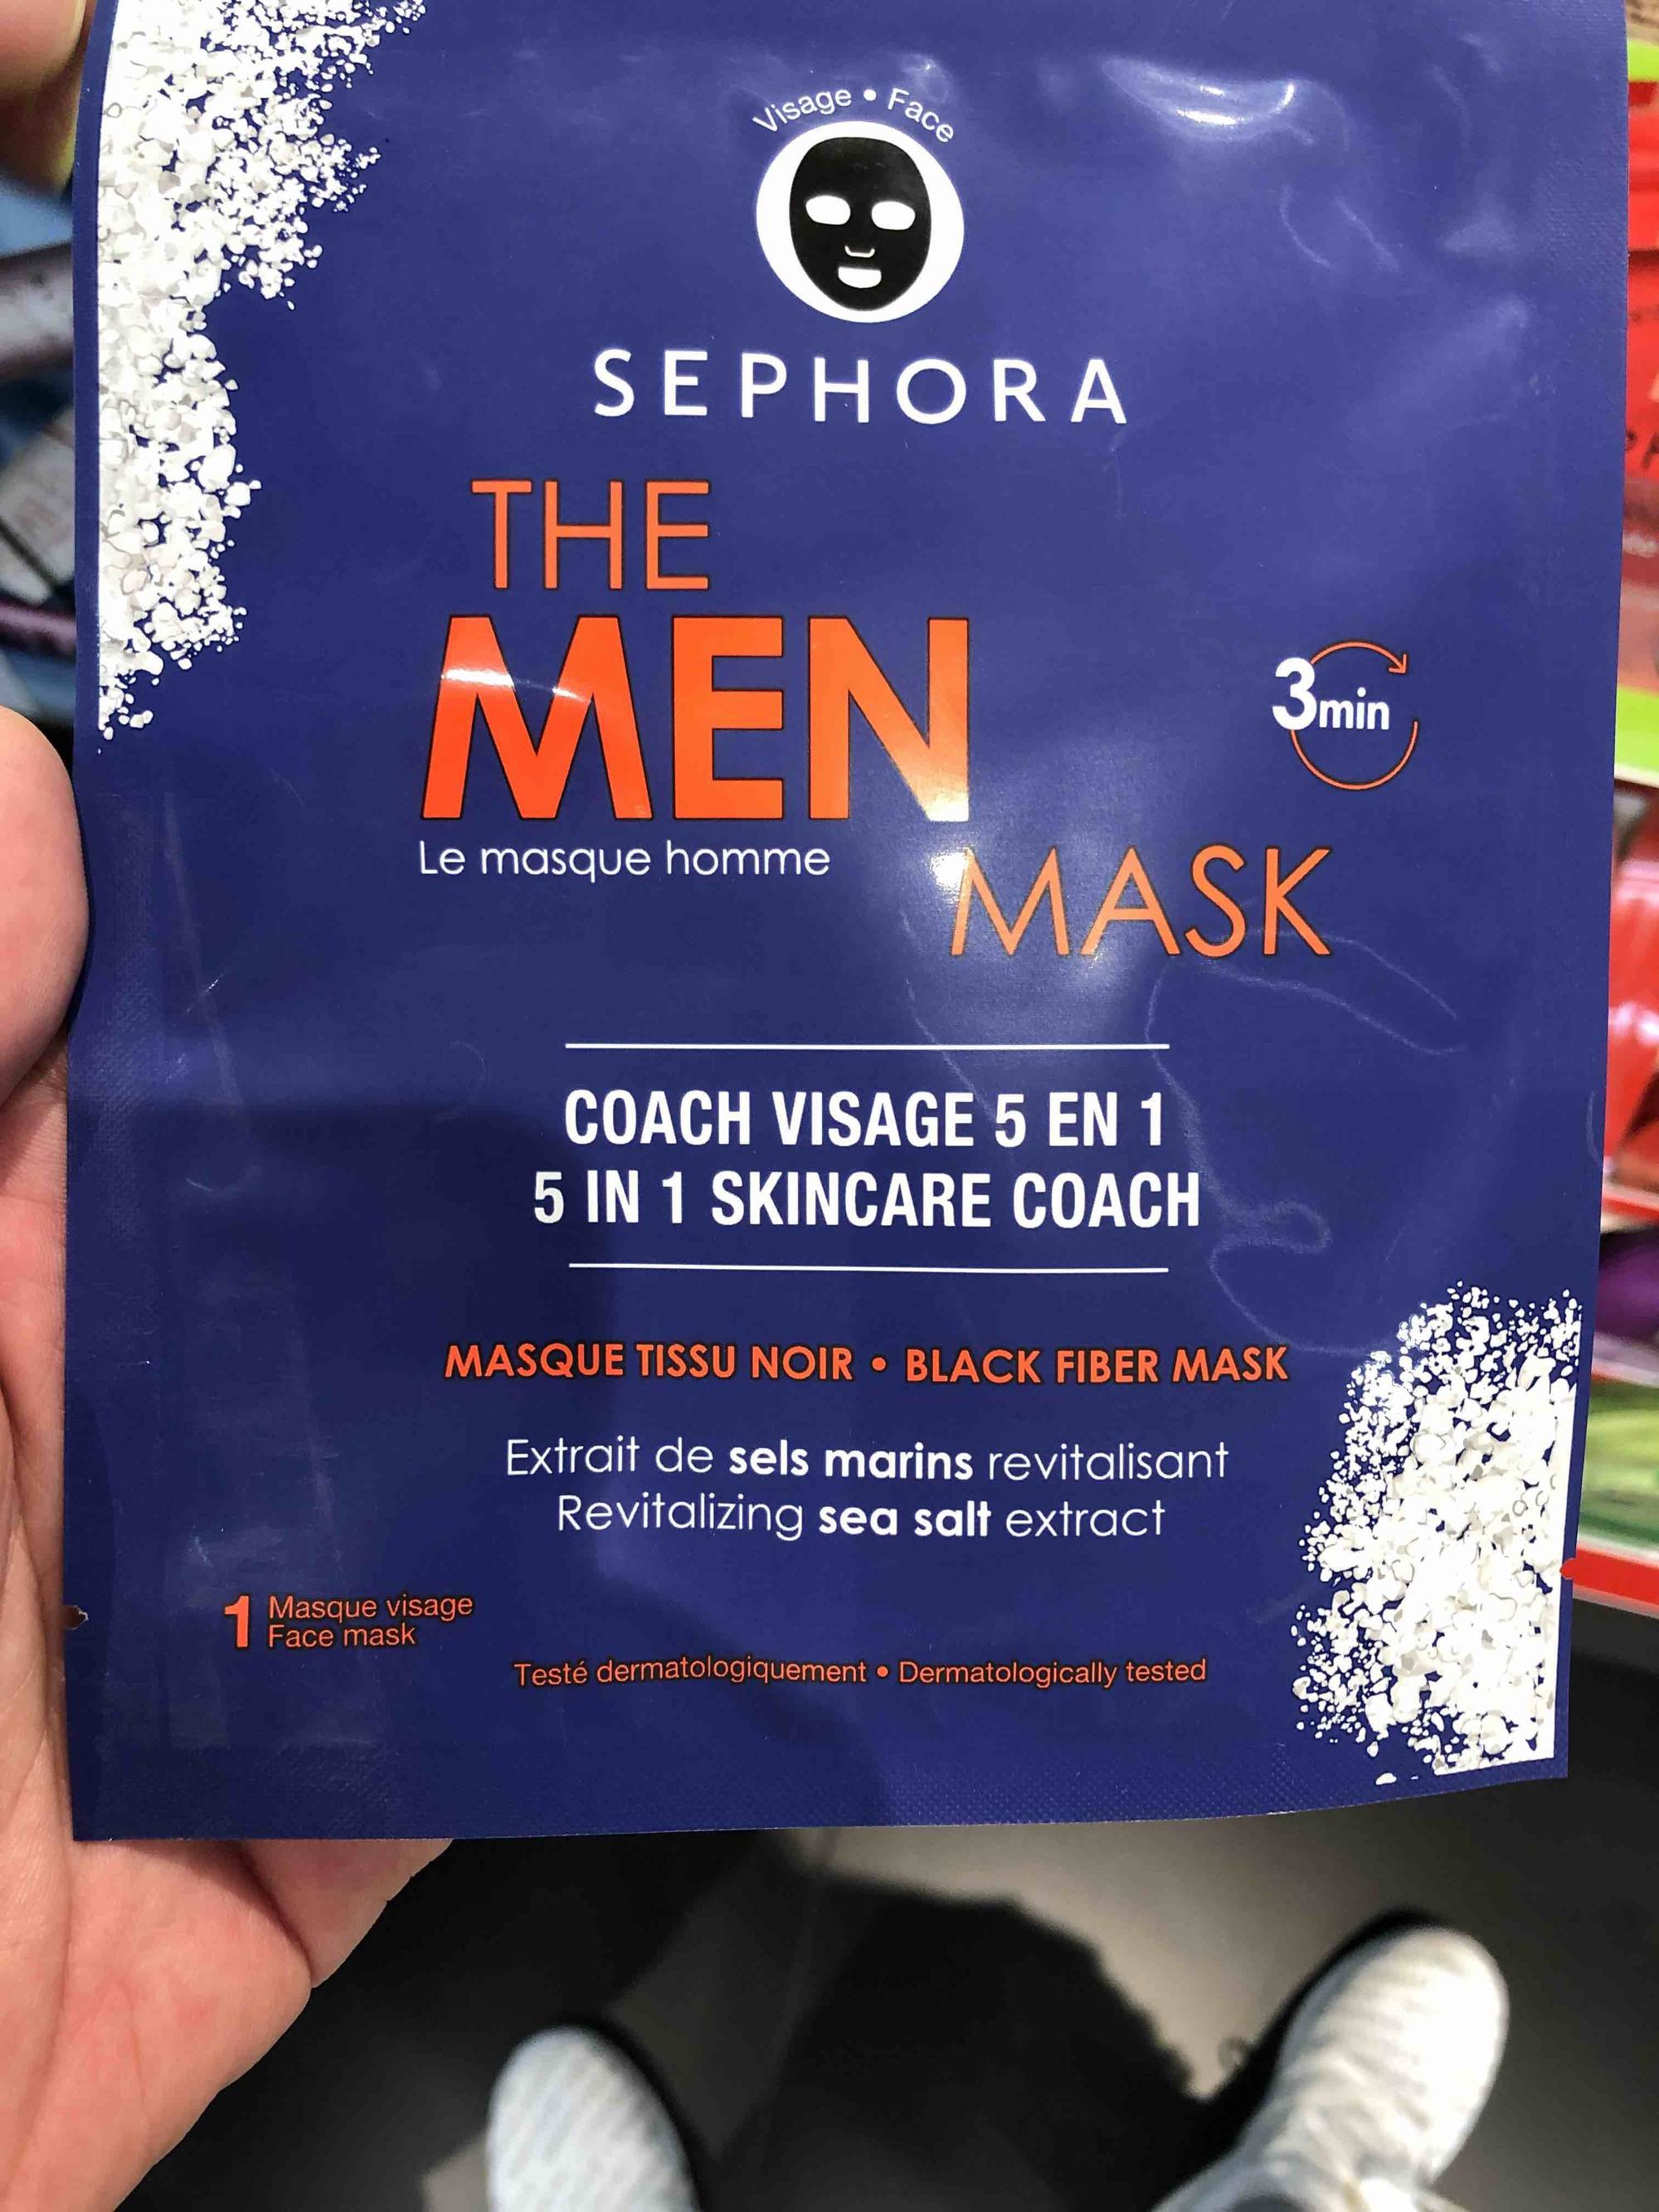 SEPHORA - Le masque homme - Coach visage 5 en 1